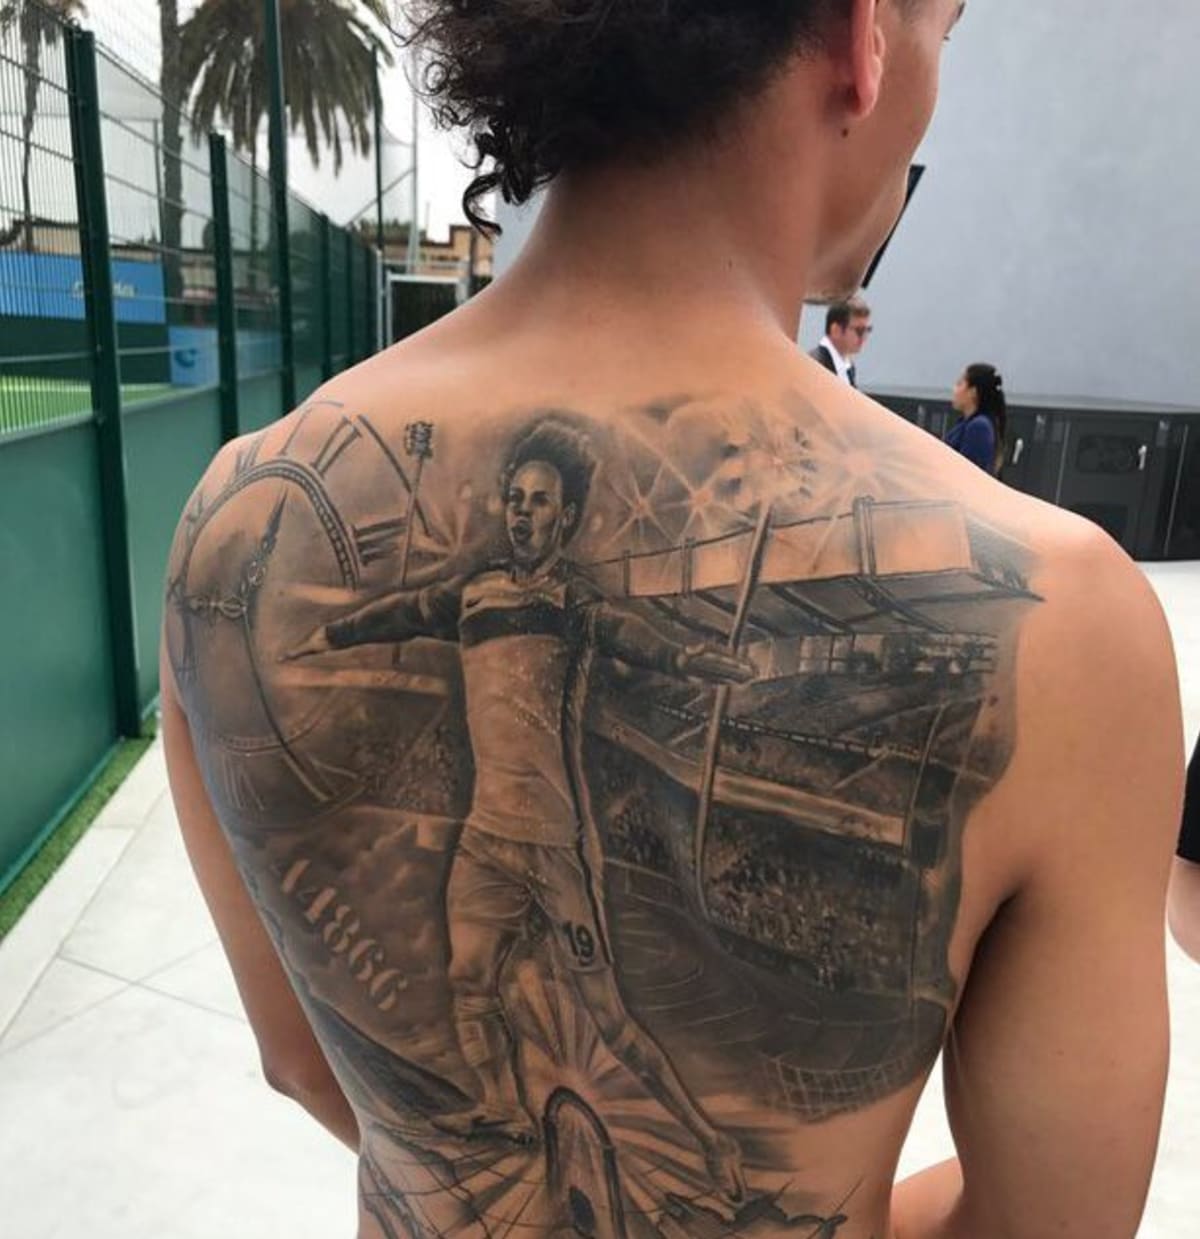 Leroy Sané z Bayern Mnichov má na zádech obrovské tetování, na kterém oslavuje vítězství Man City nad AS Monaco 5:3 v Lize mistrů v roce 2017. (zdroj: City Xtra)